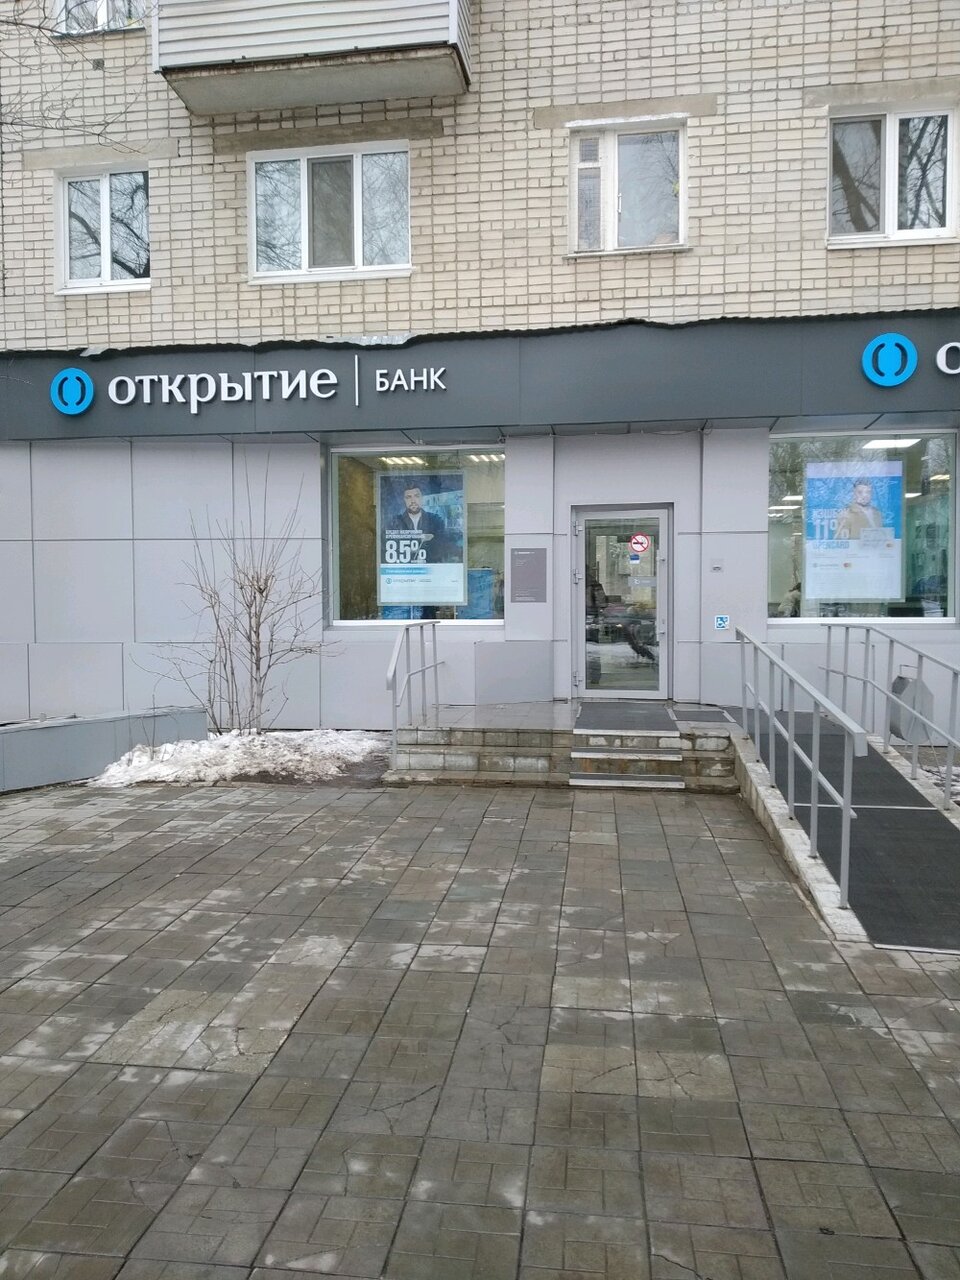 Обмен валюты банк открытие ульяновск financial crypto